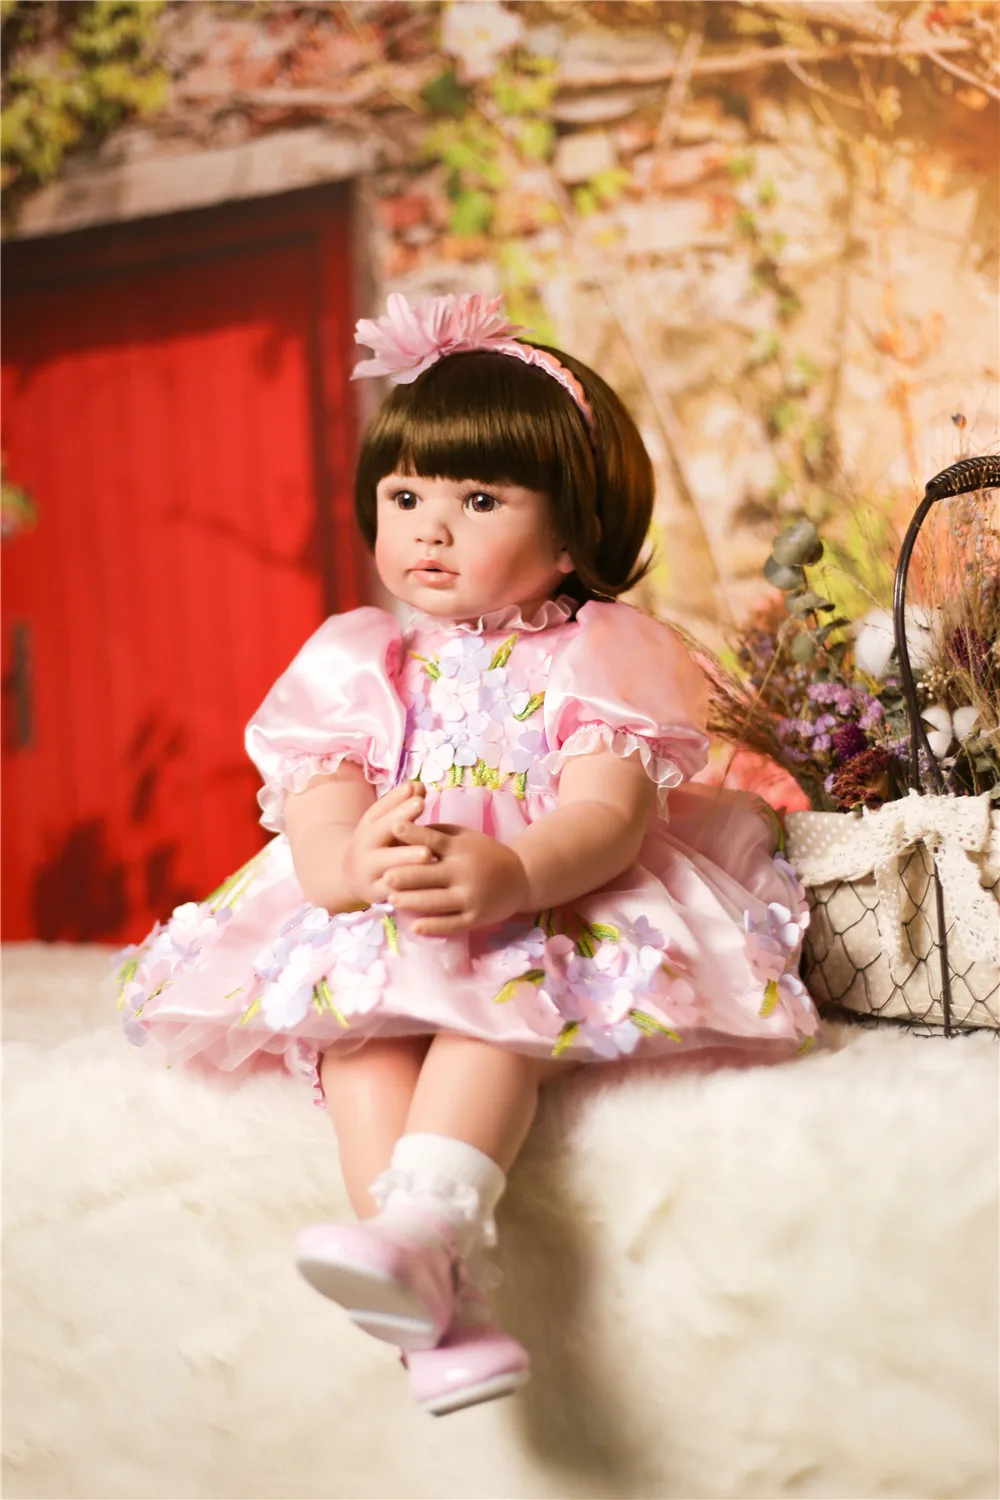 24 дюйма 60 см bebes Reborn Baby куклы ручной работы классическая игрушка кукла подарок Мягкий силикон Reborn baby куклы для детей девочек bonecas